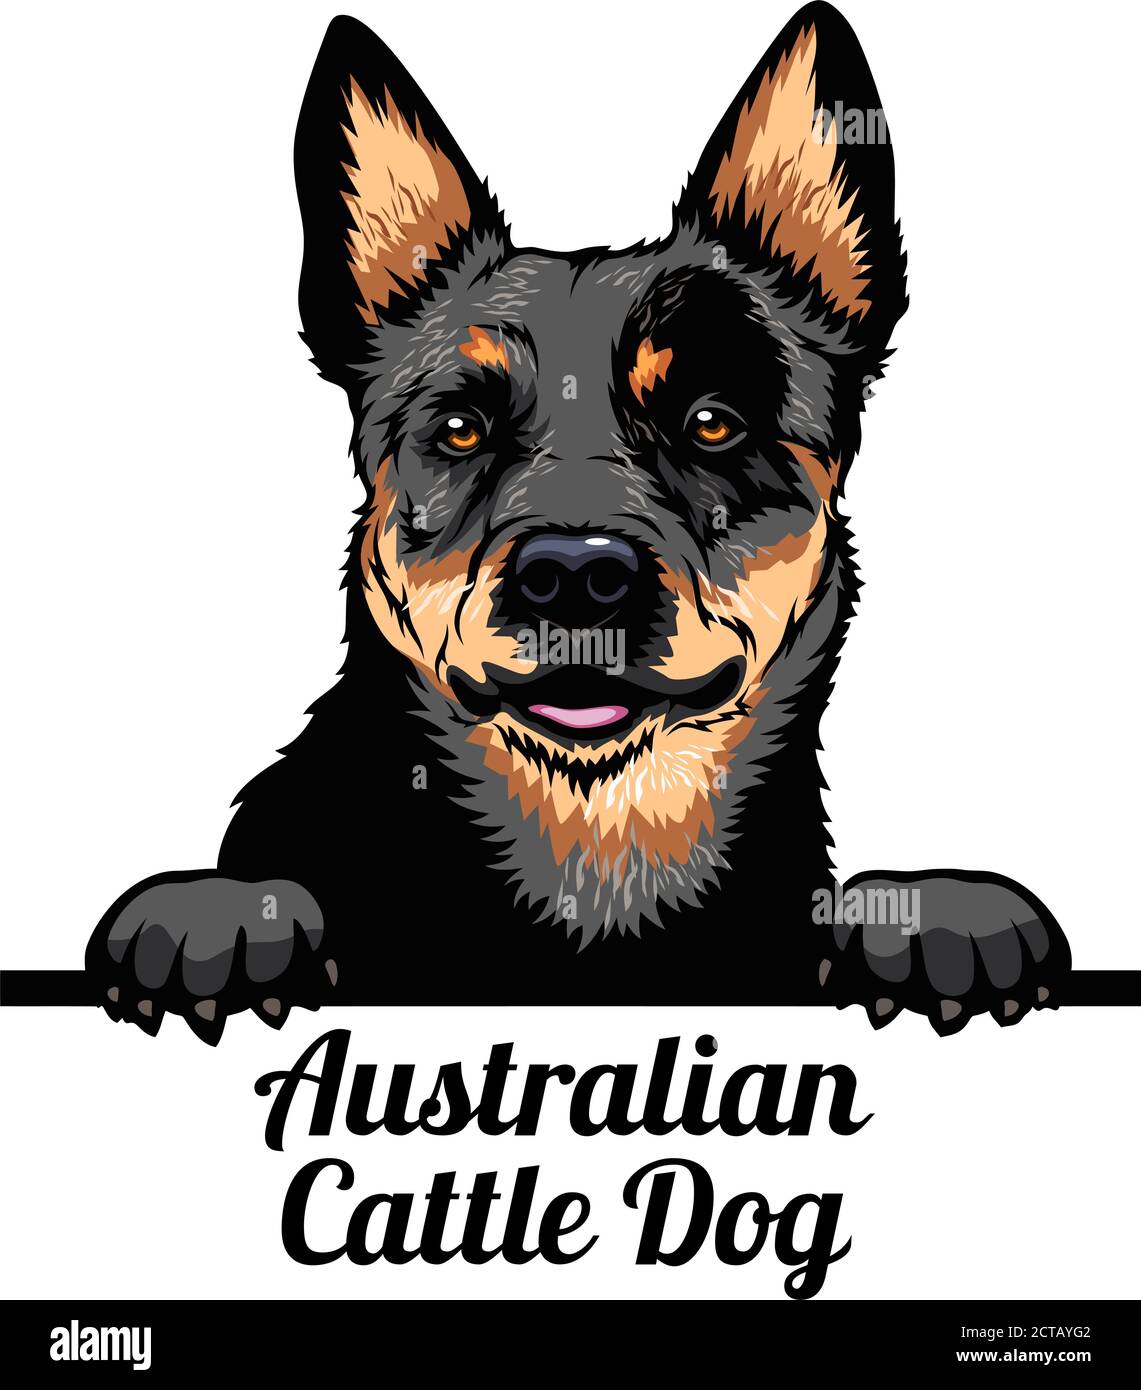 Cane da peeking - cane da bestiame australiano - razza di cane. Immagine a colori di una testa di cani isolata su uno sfondo bianco Illustrazione Vettoriale